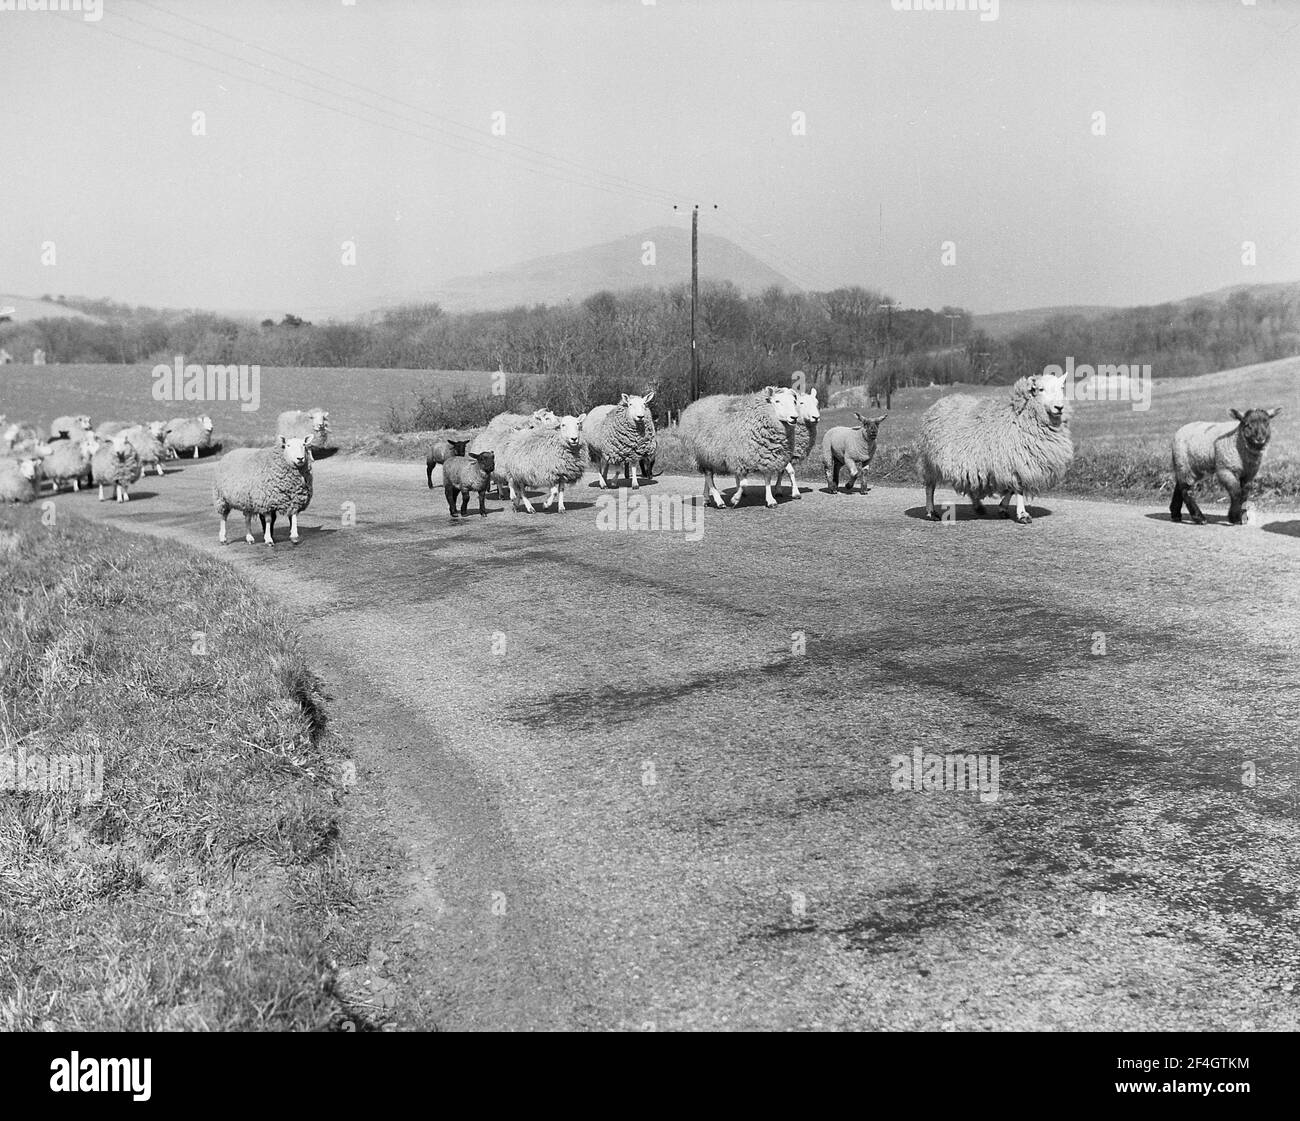 1951, historique, troupeau de moutons sur une route de campagne en dehors de Dumfries, Écosse, Royaume-Uni. Banque D'Images